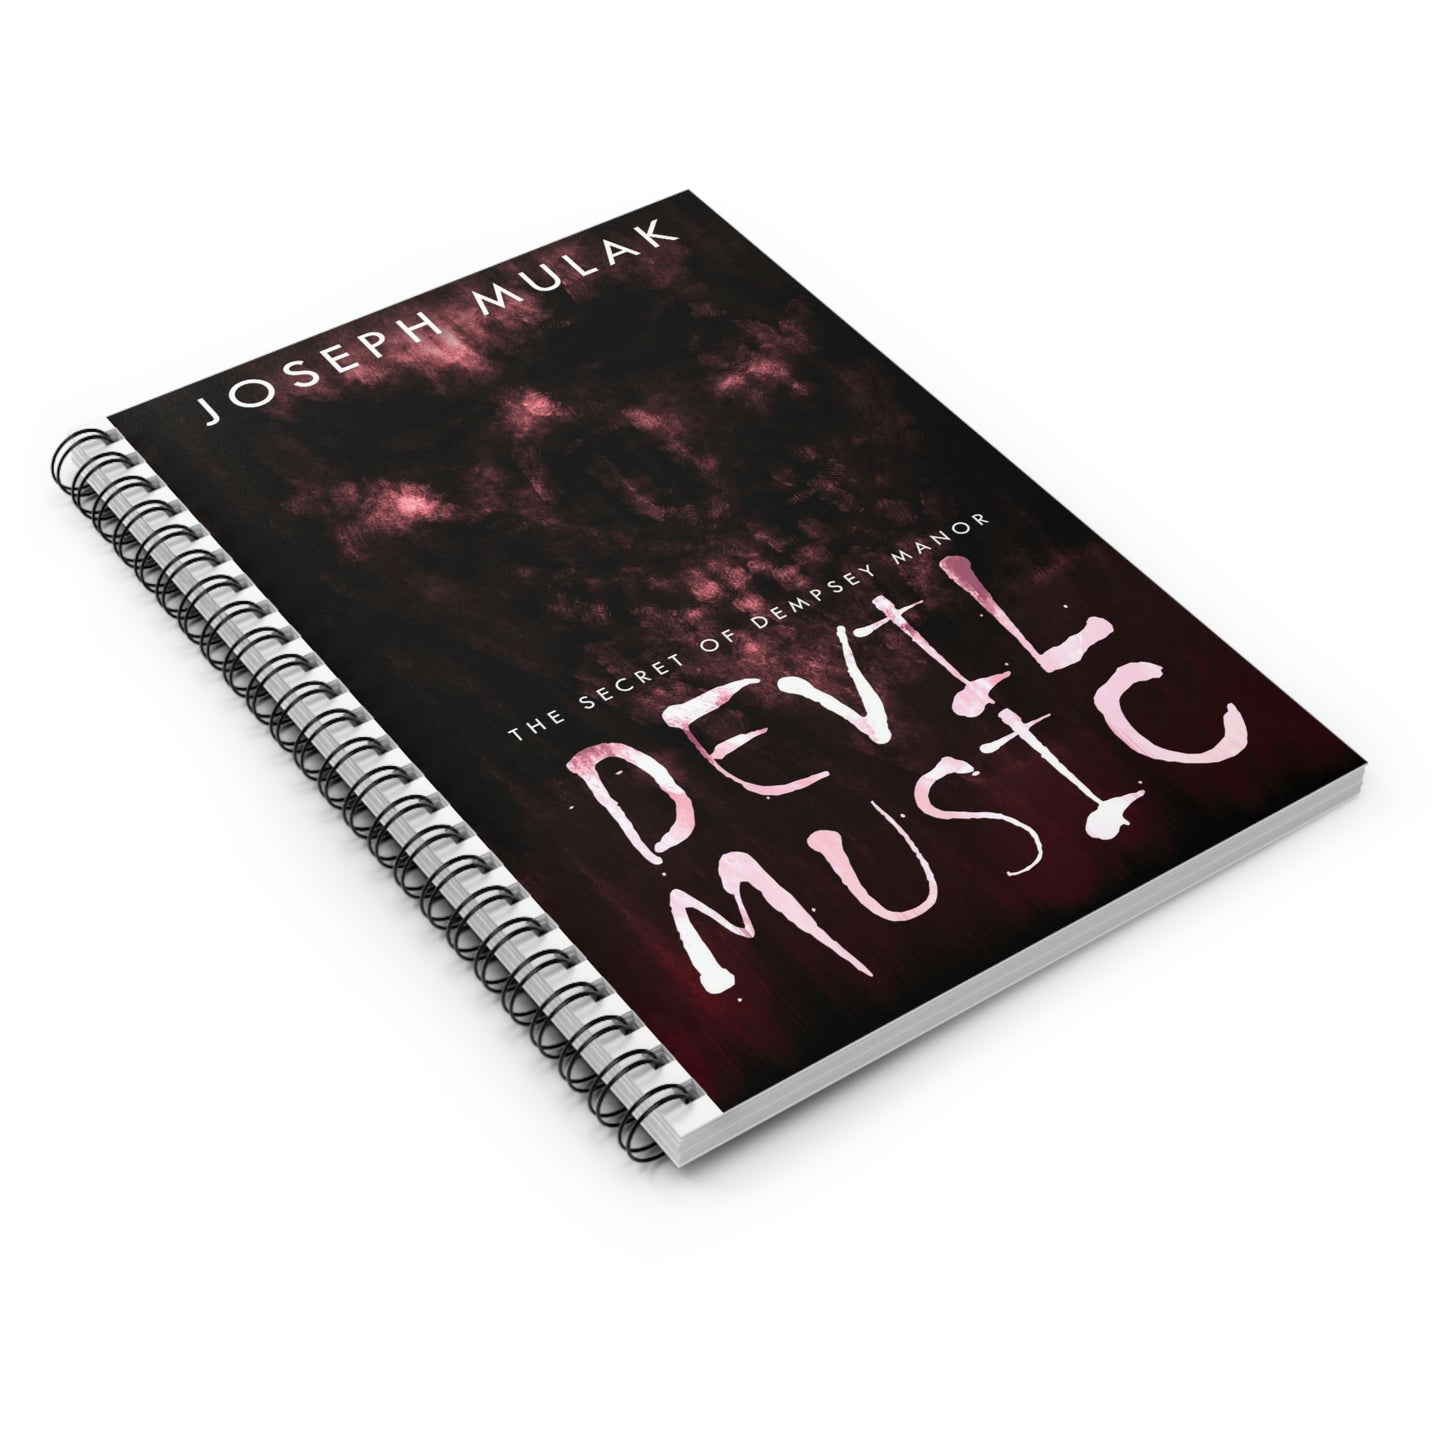 Devil Music - Spiral Notebook